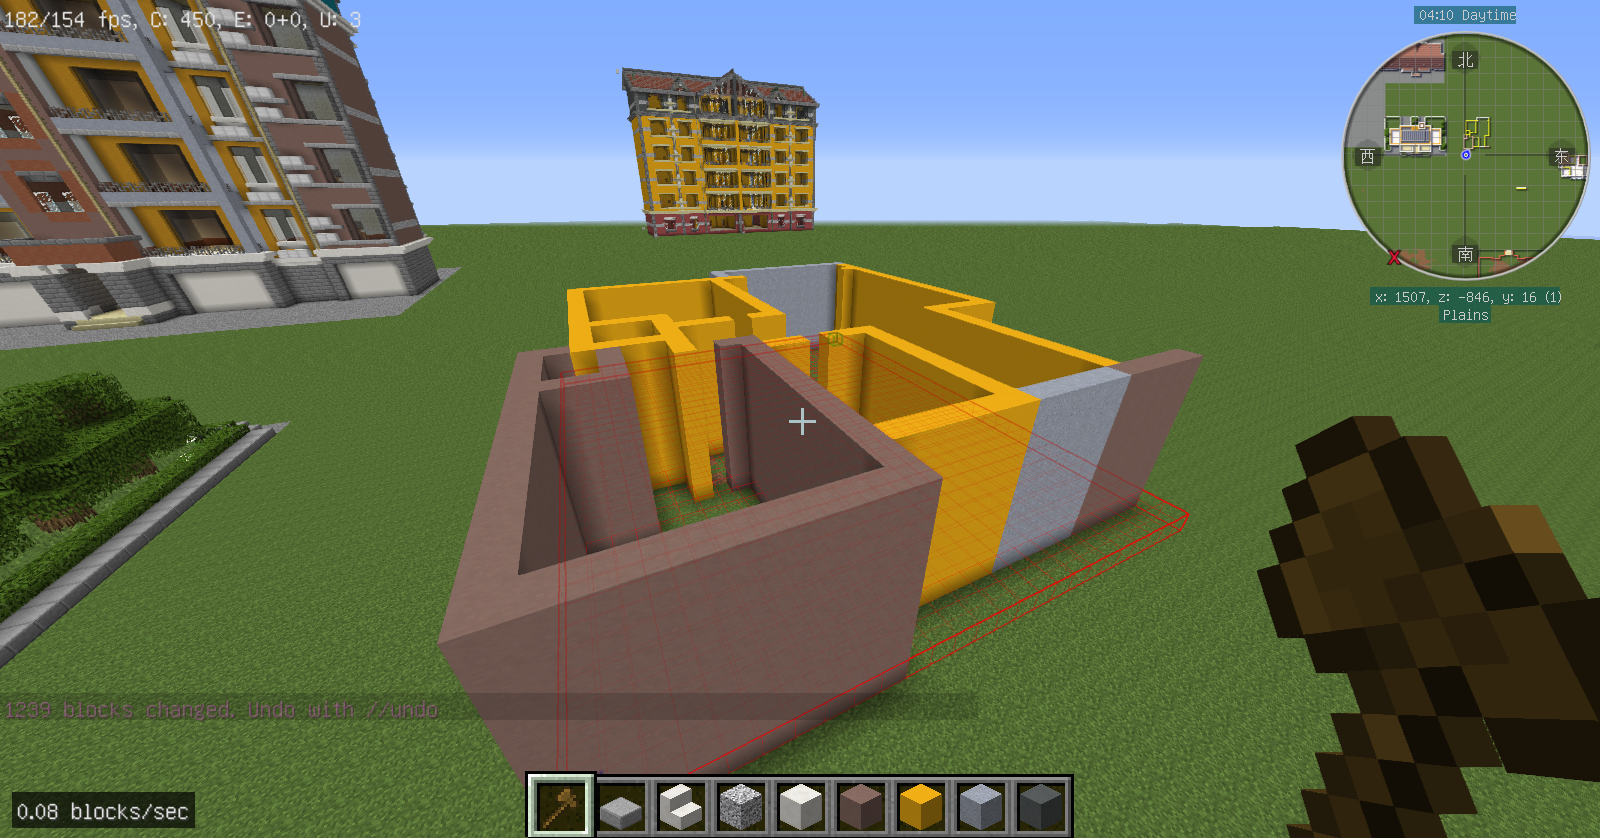 Minecraft 教大家如何用minecraft建造一栋现实的住宅建筑 Acfun弹幕视频网 认真你就输啦 W ノ つロ